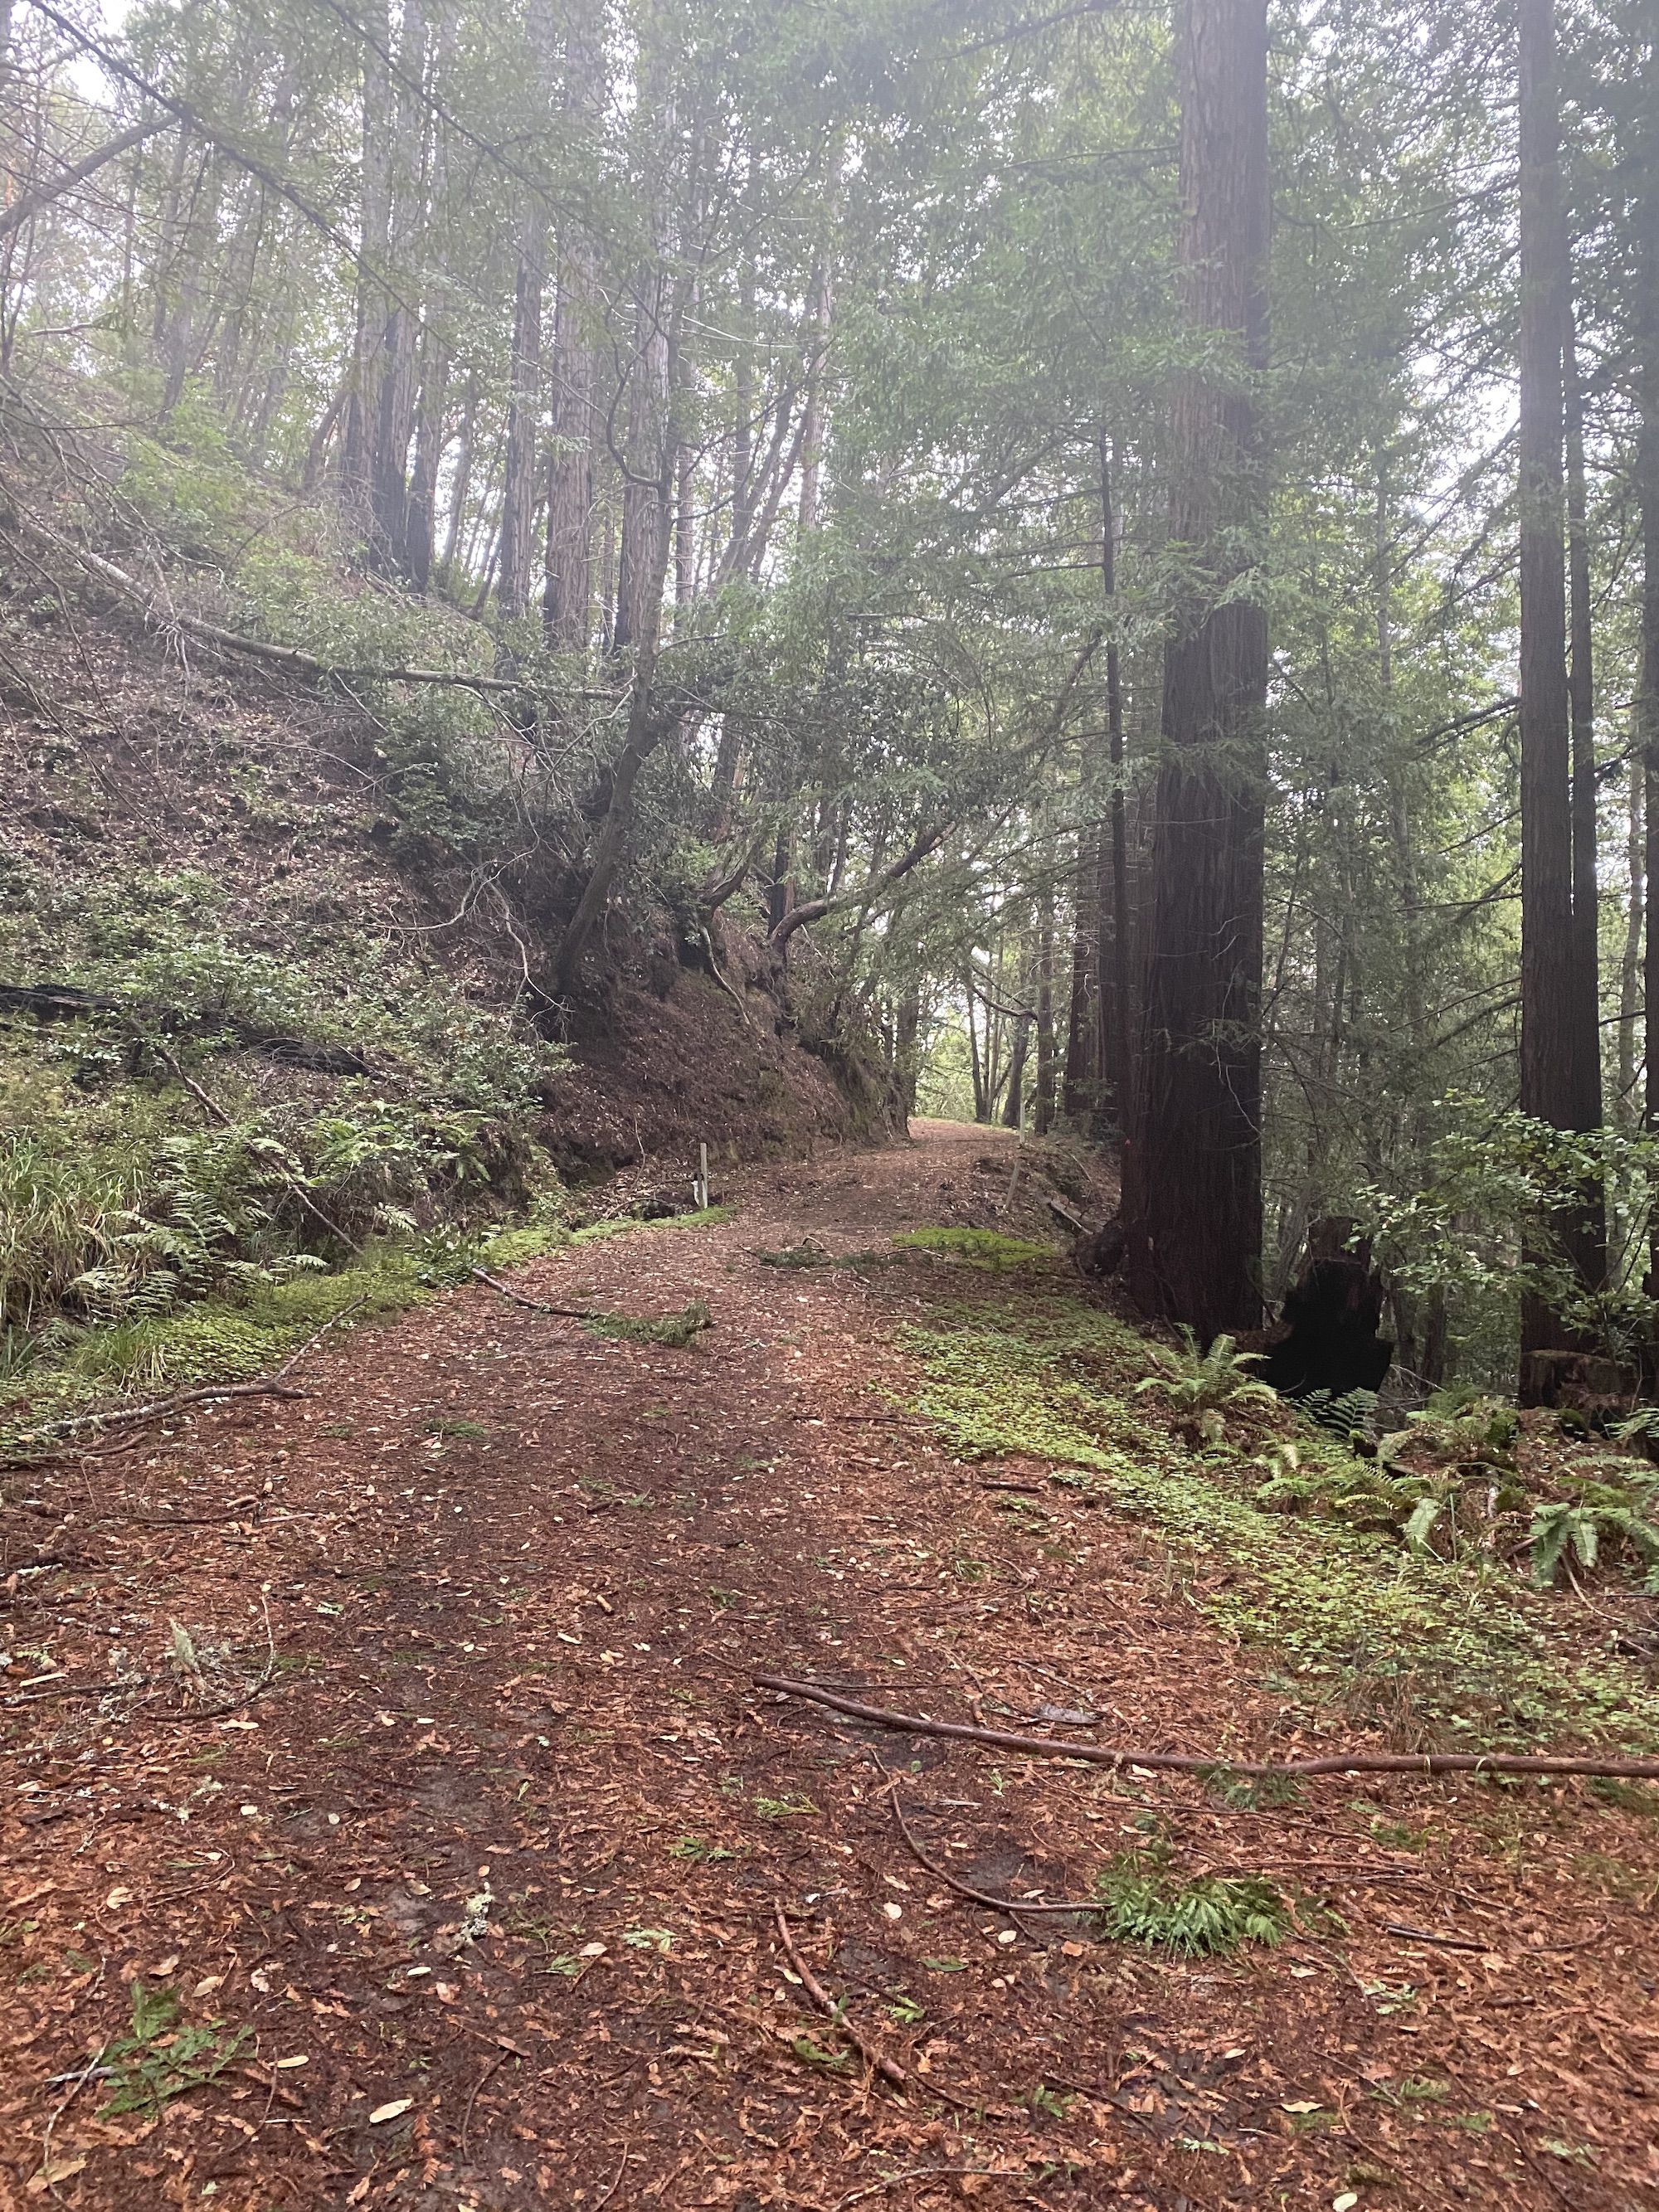 A dirt road running through a redwood forest